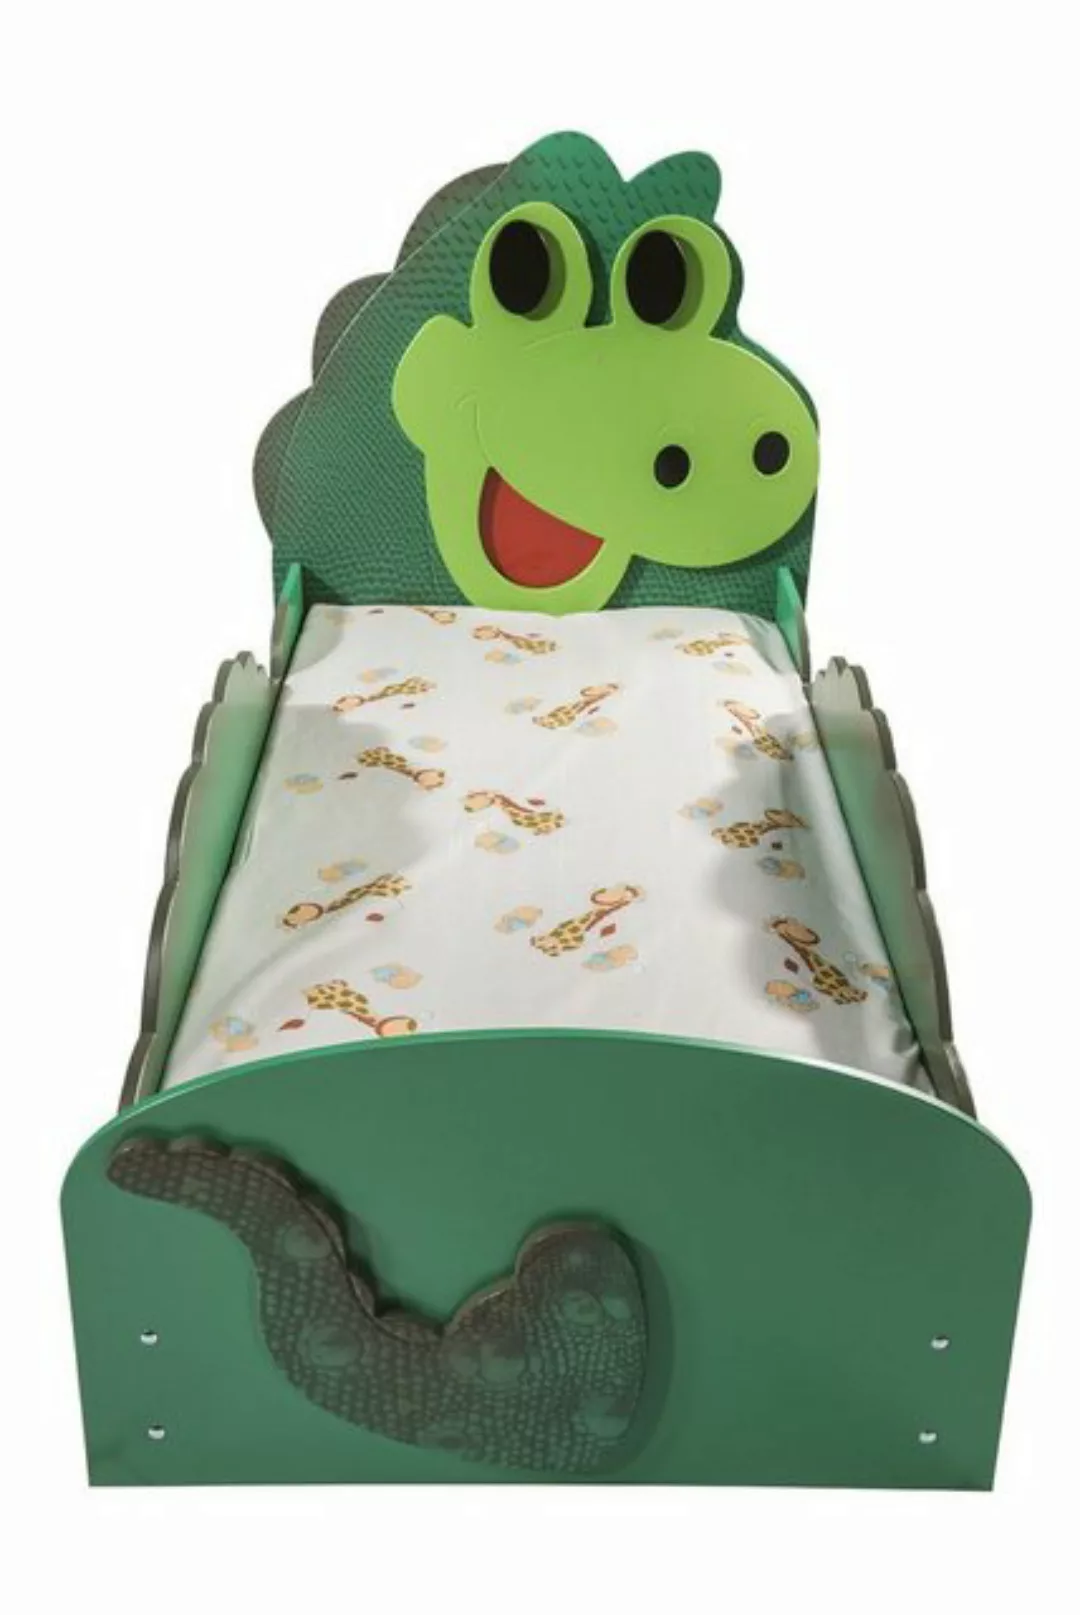 Faizee Möbel Kinderbett günstig online kaufen